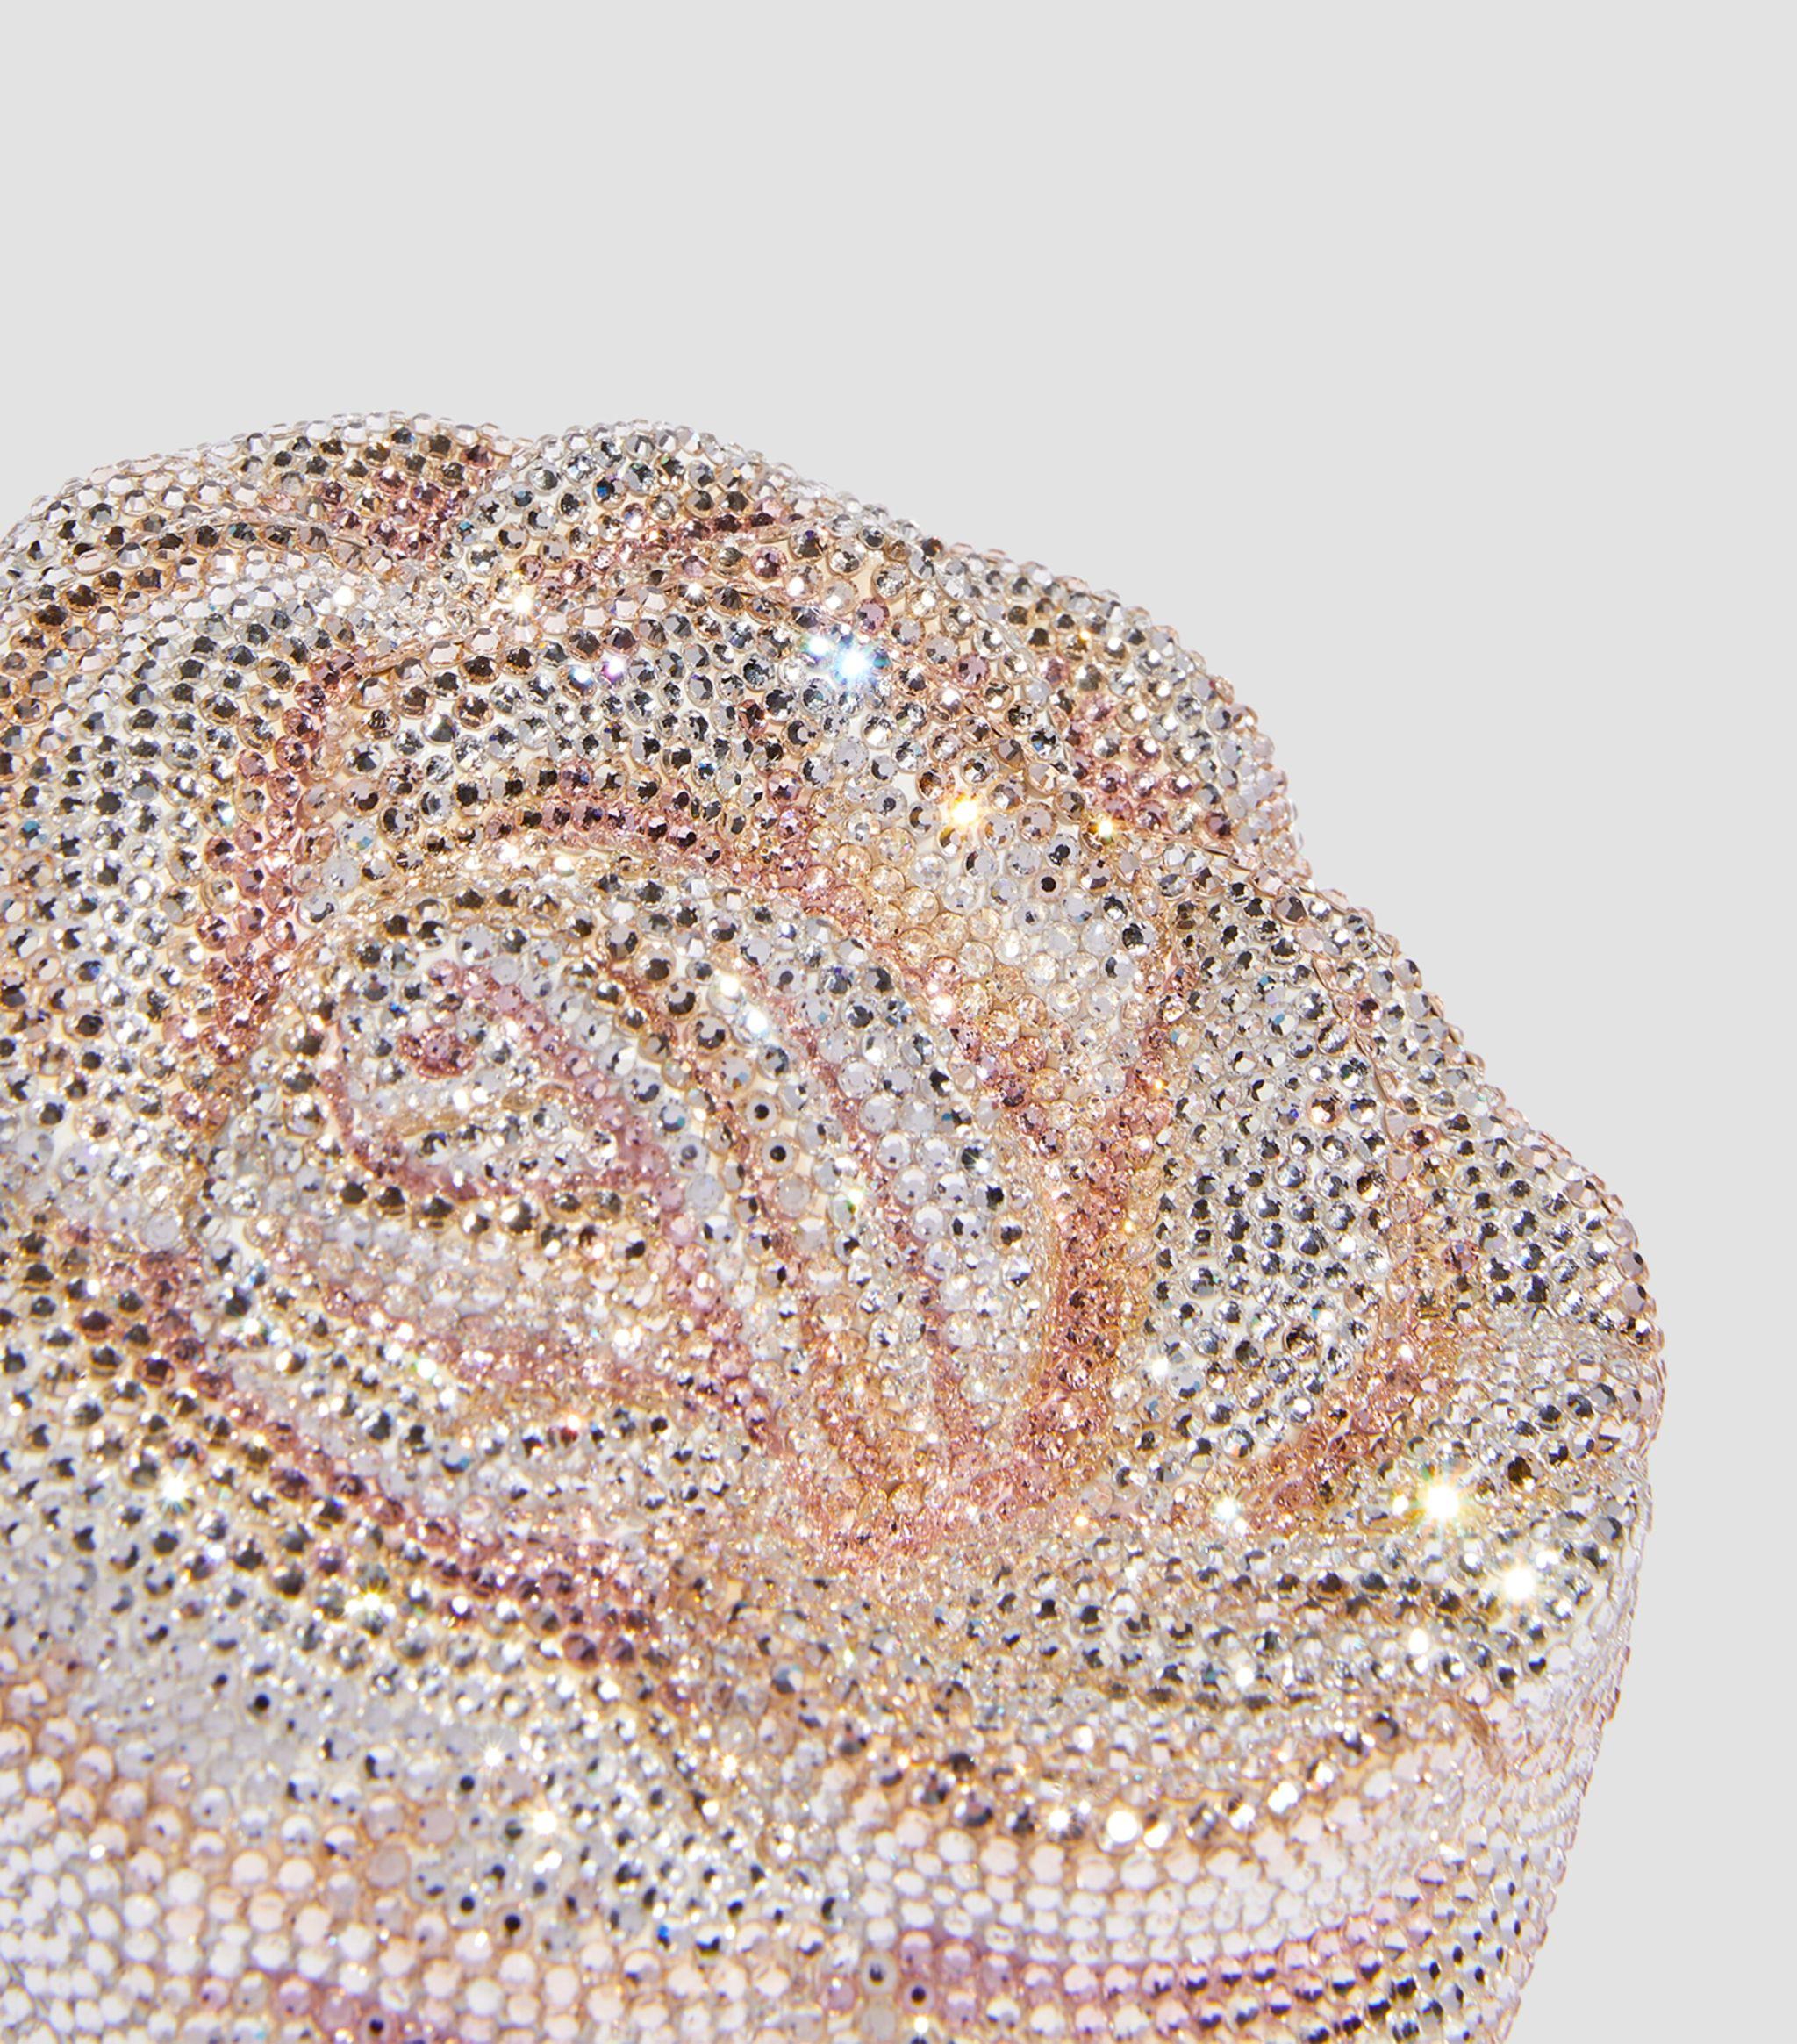 Judith Leiber Crystal-embellished Rose Clutch Bag in Natural